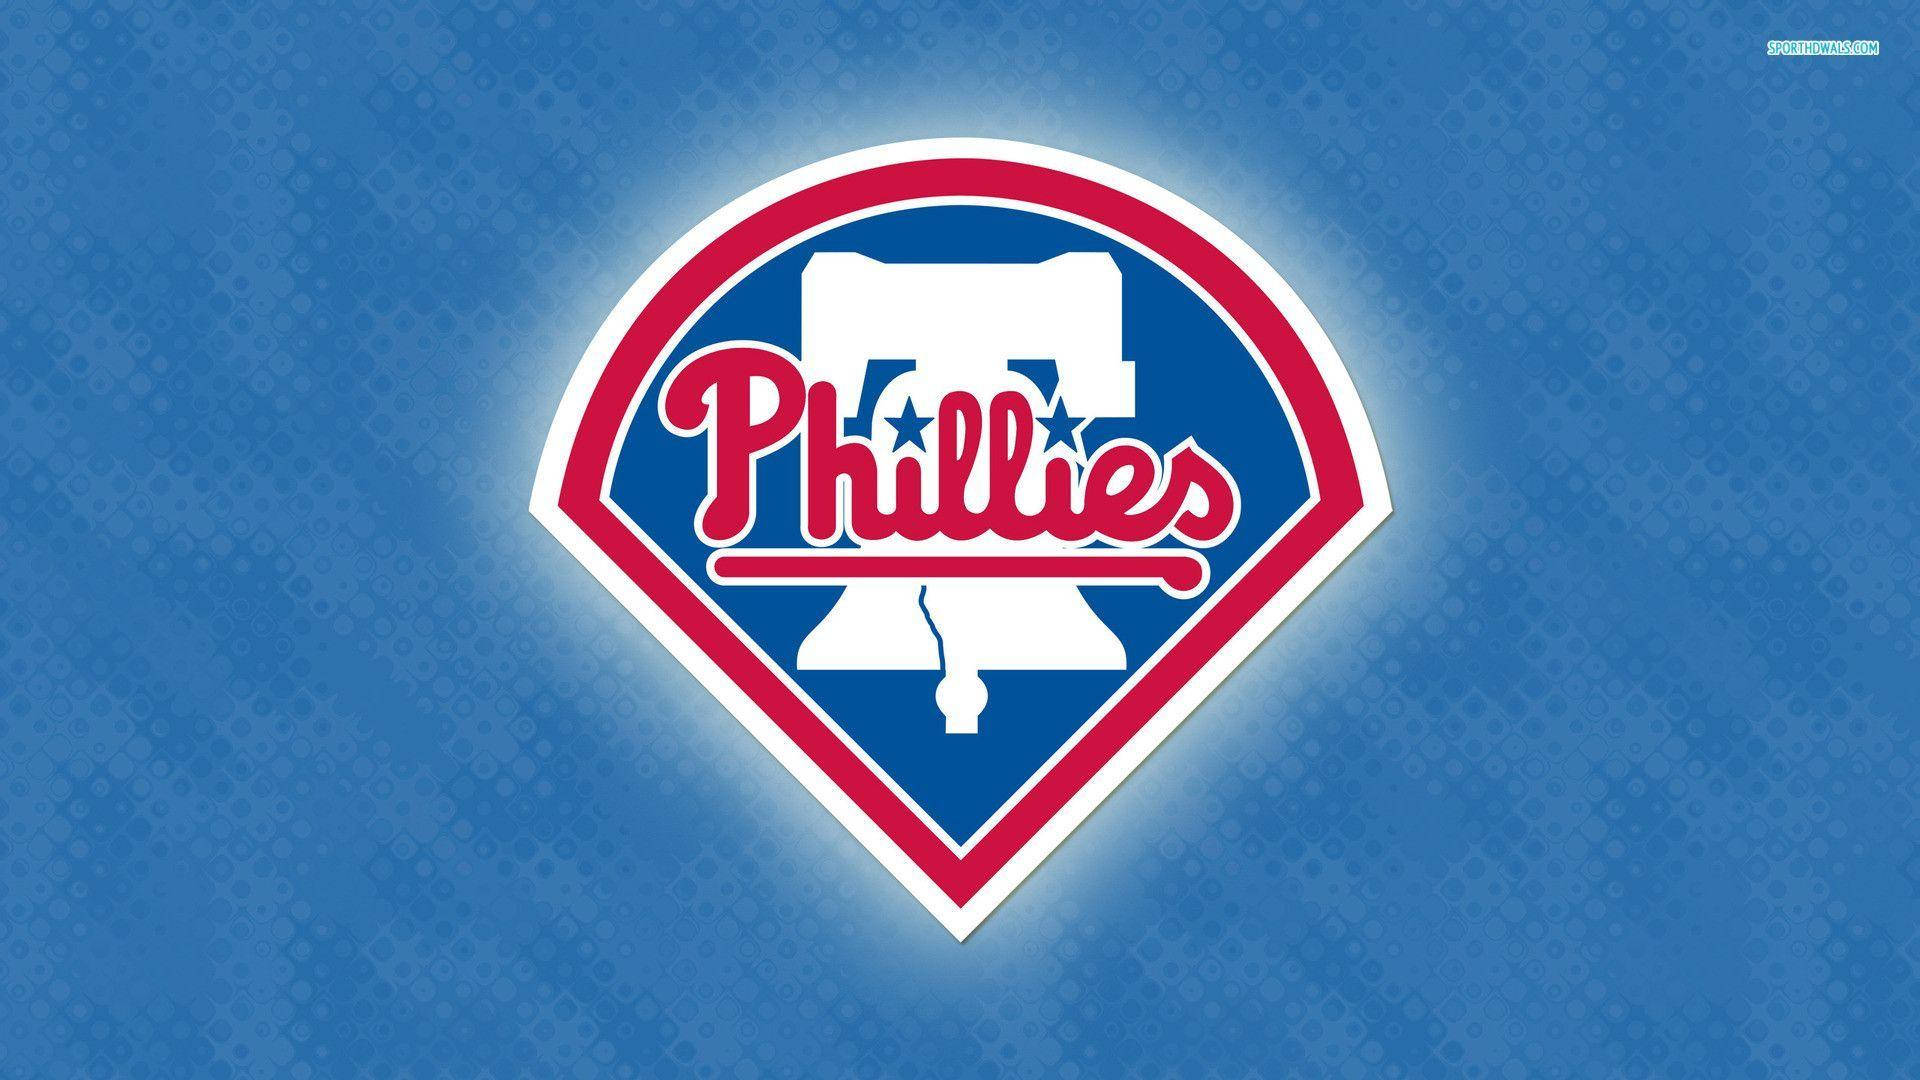 Philadelphia Phillies Baseball Team Logo Background